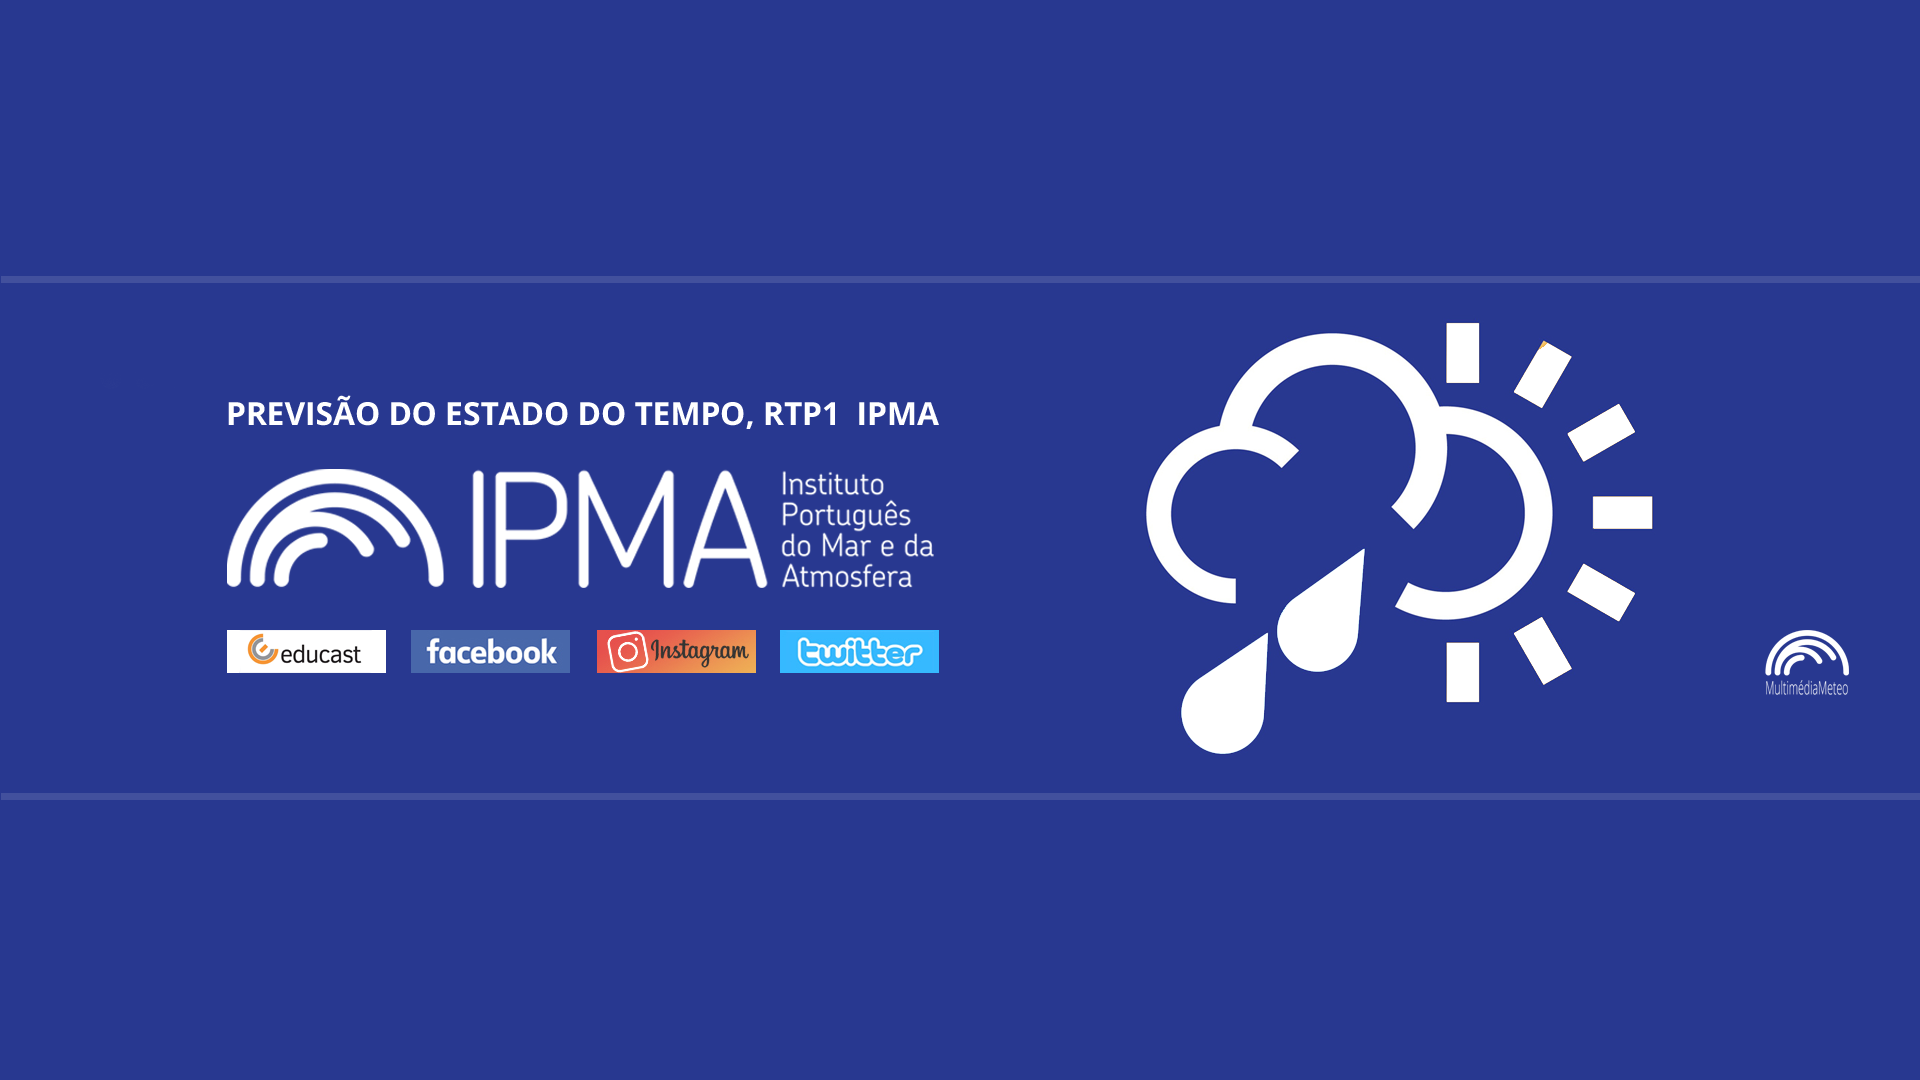  Previsão do estado do tempo, RTP1, 09-02-2022, IPMA.